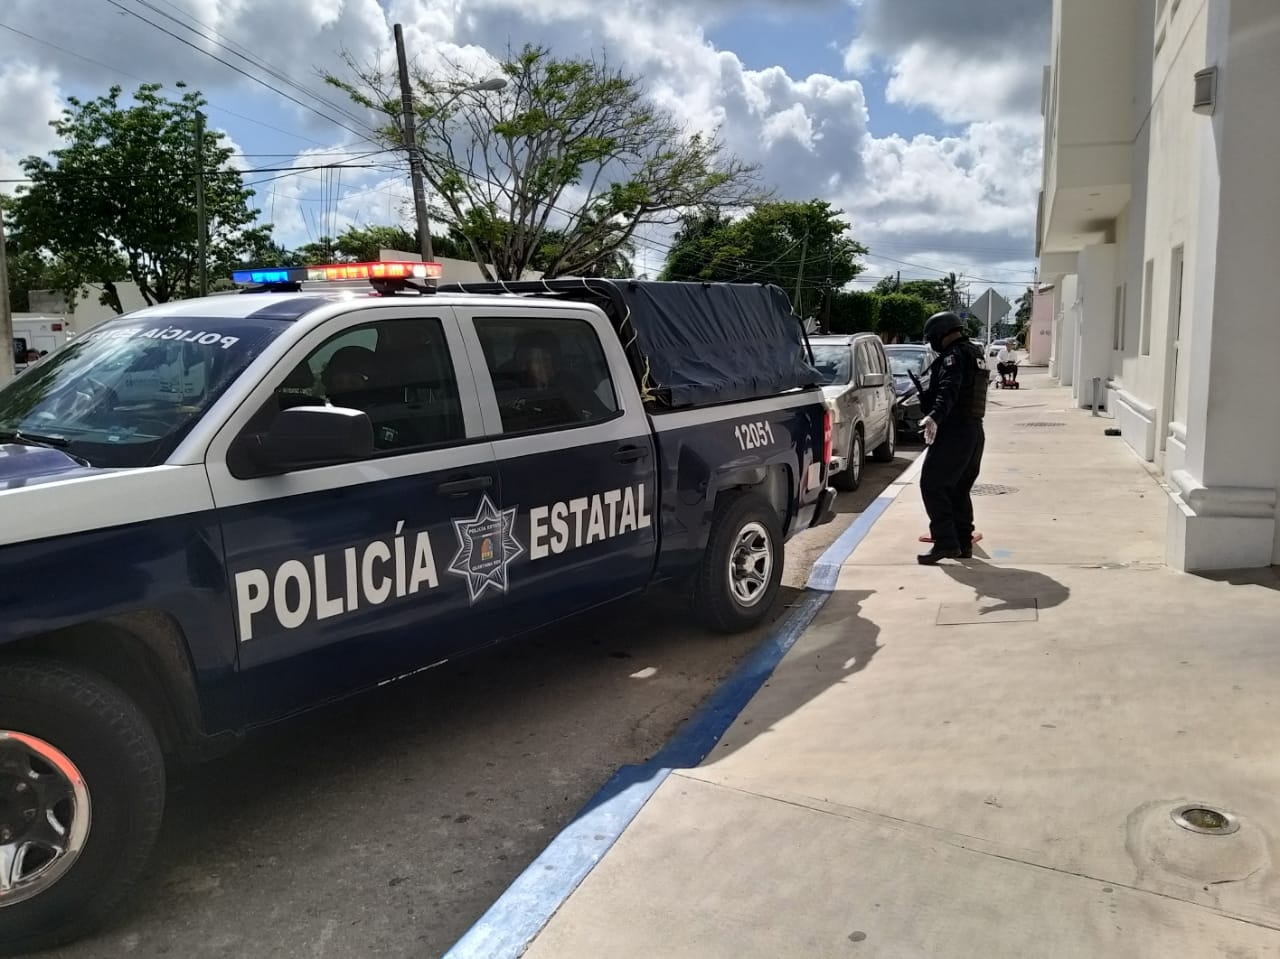 Regidores de Cozumel exigen renuncia del jefe de la policía; los resultados no llegan, aseguran